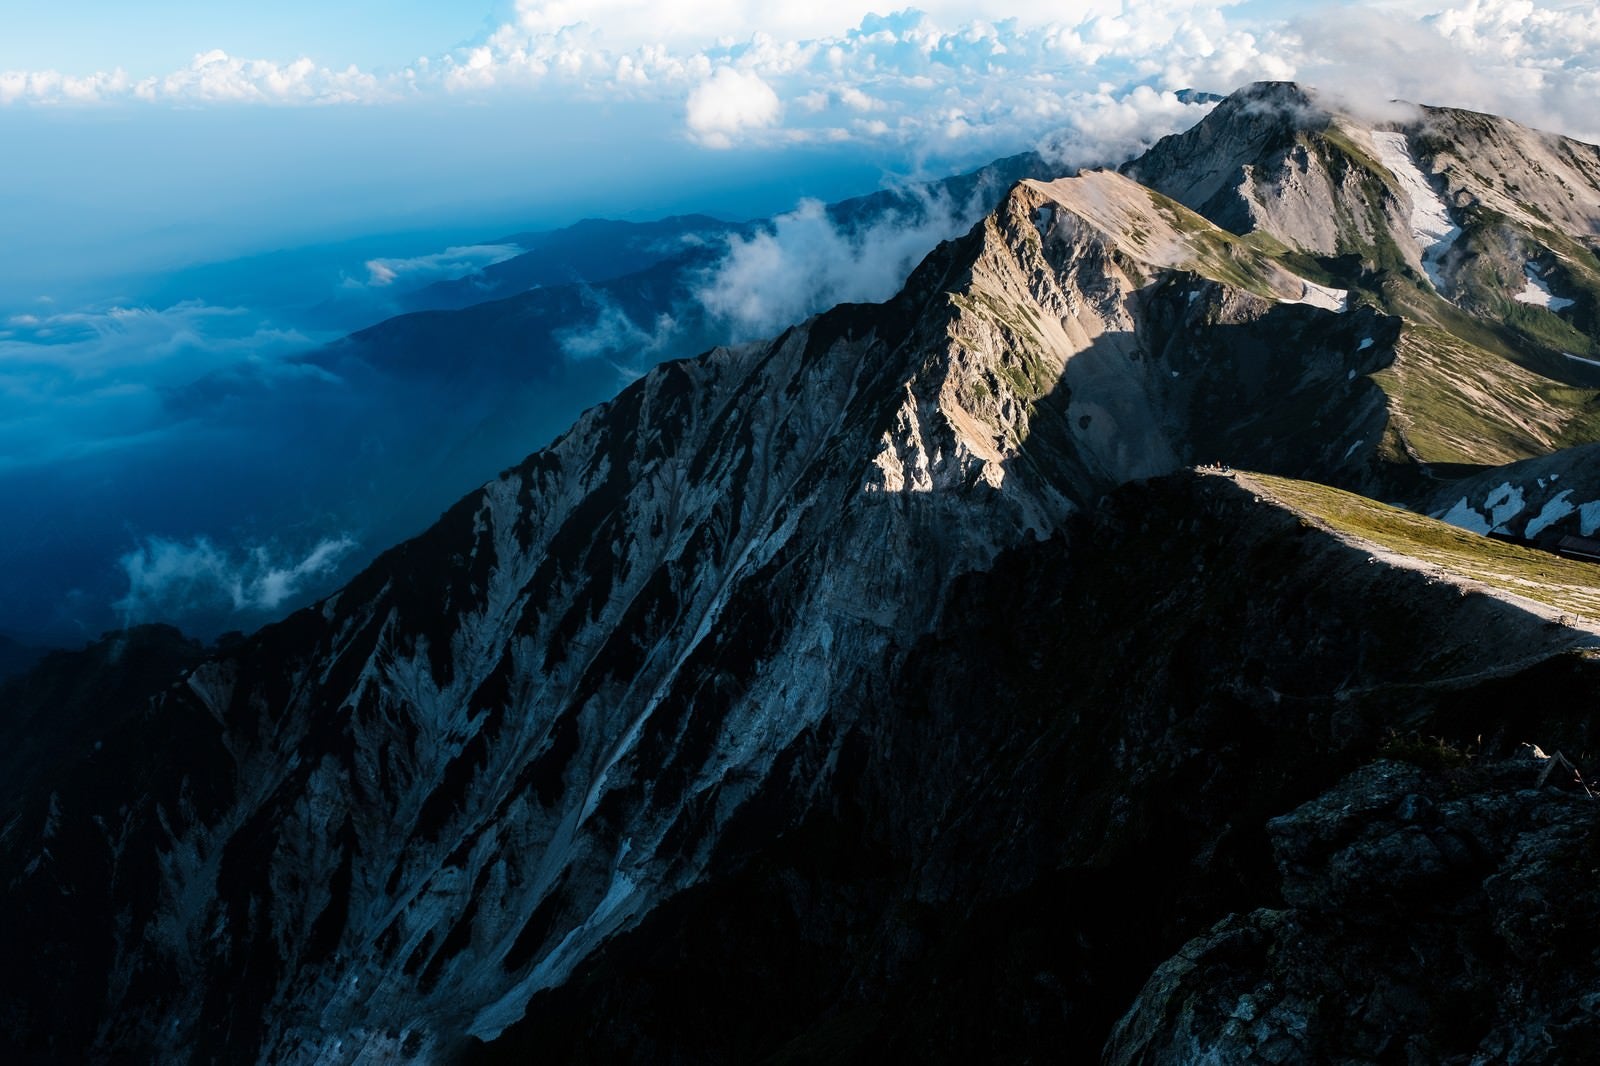 「夕日が当たらない杓子岳の切り立つ山肌」の写真